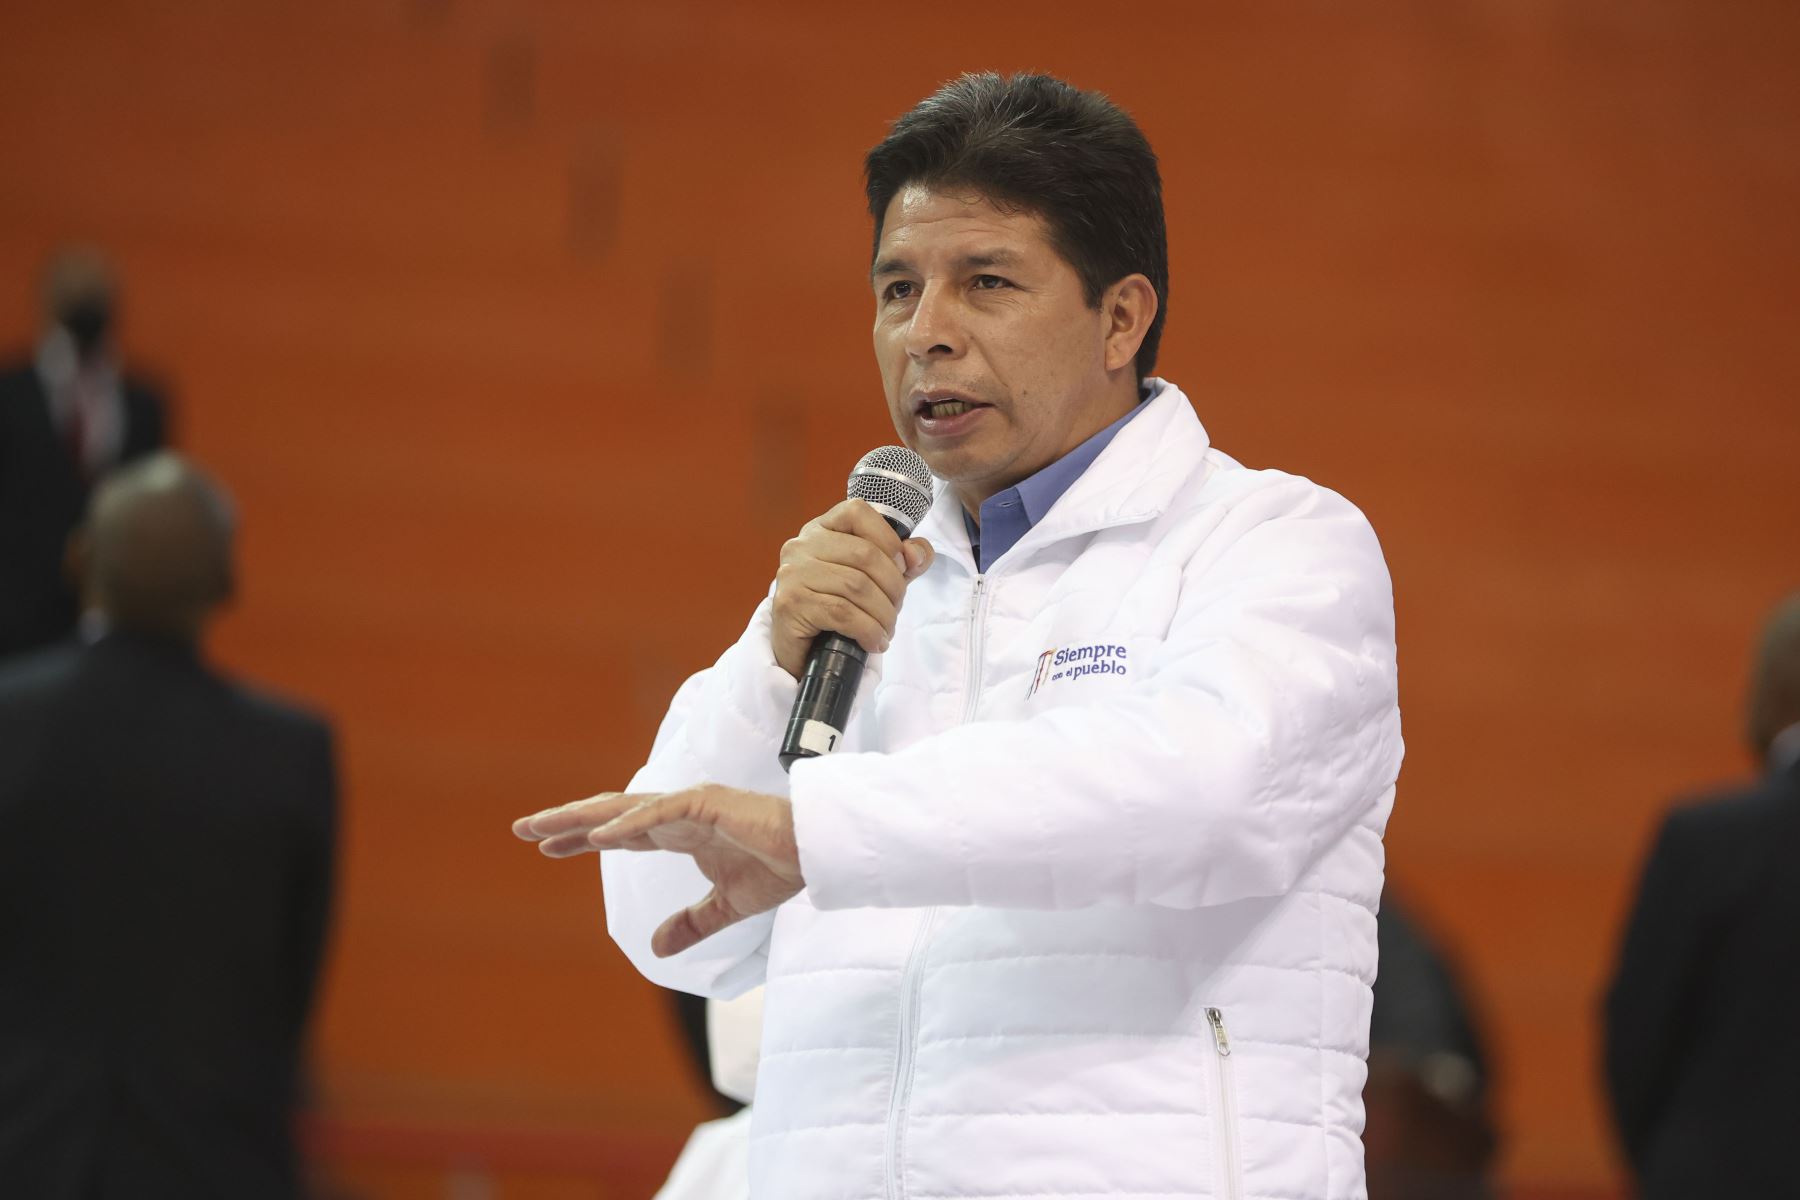 Jefe de Estado, Pedro Castillo, preside el XVIII Consejo de Ministros Descentralizado en Huaraz, región Áncash. Foto: ANDINA/Prensa Presidencia